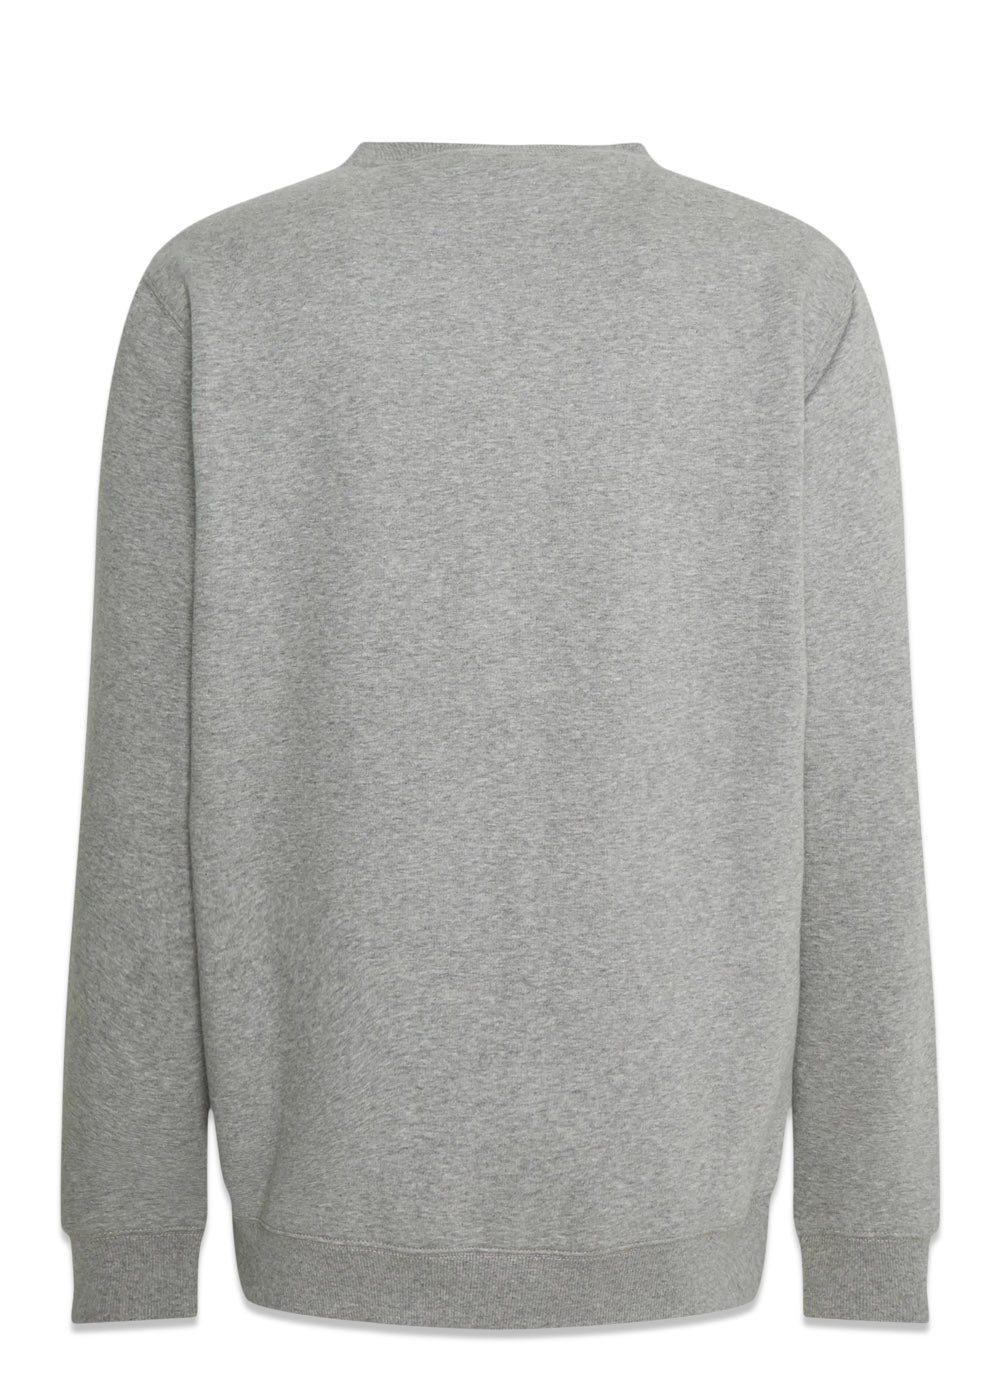 oakport sweatshirt - Grey